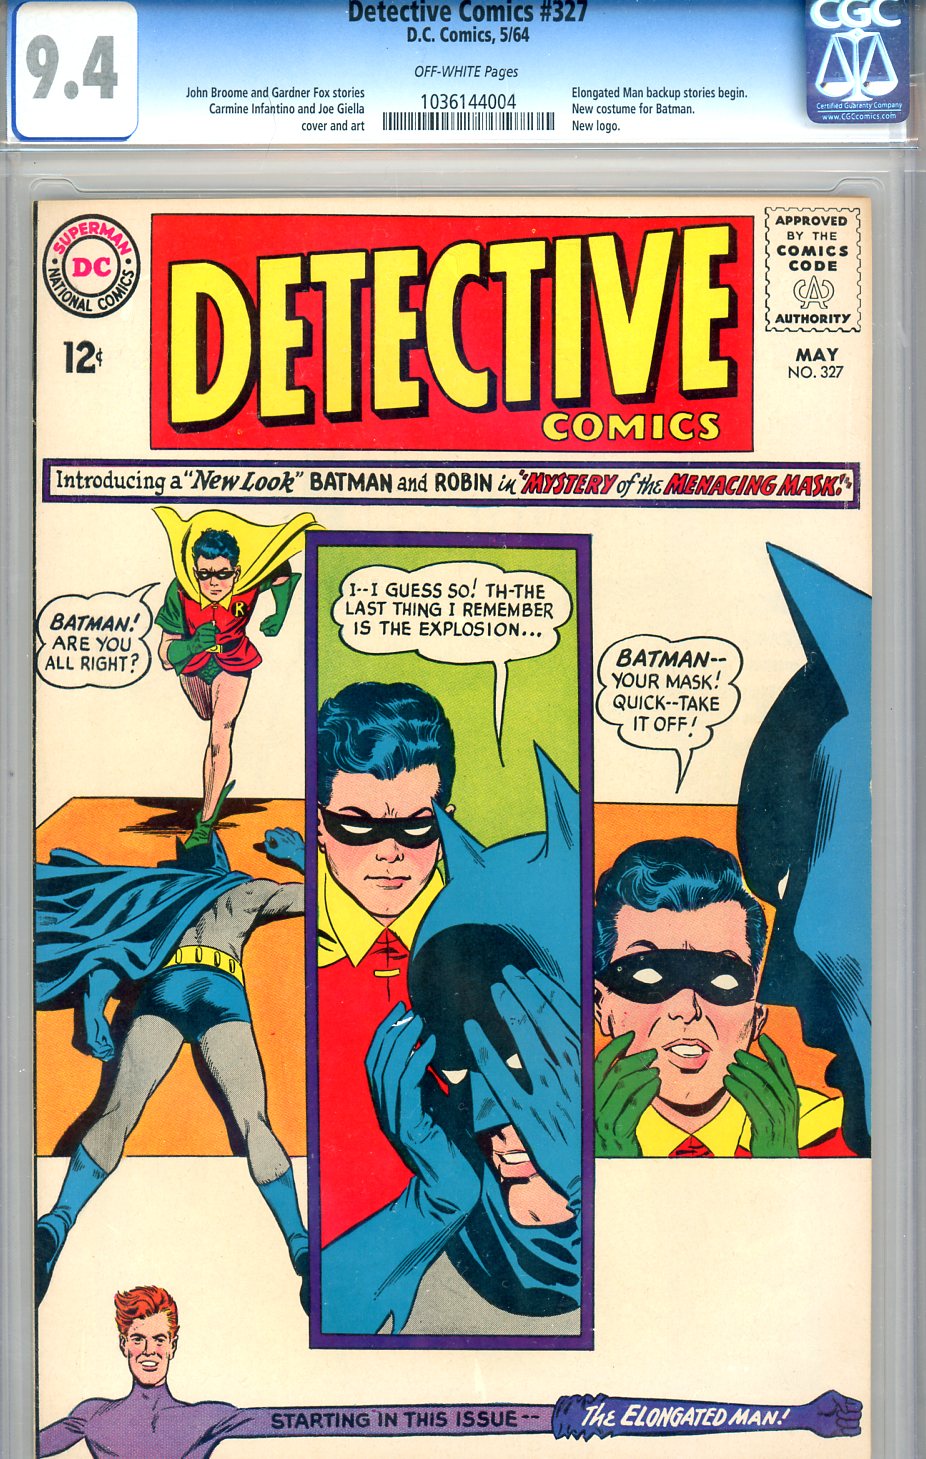 Detective Comics #327 CGC 9.4 ow